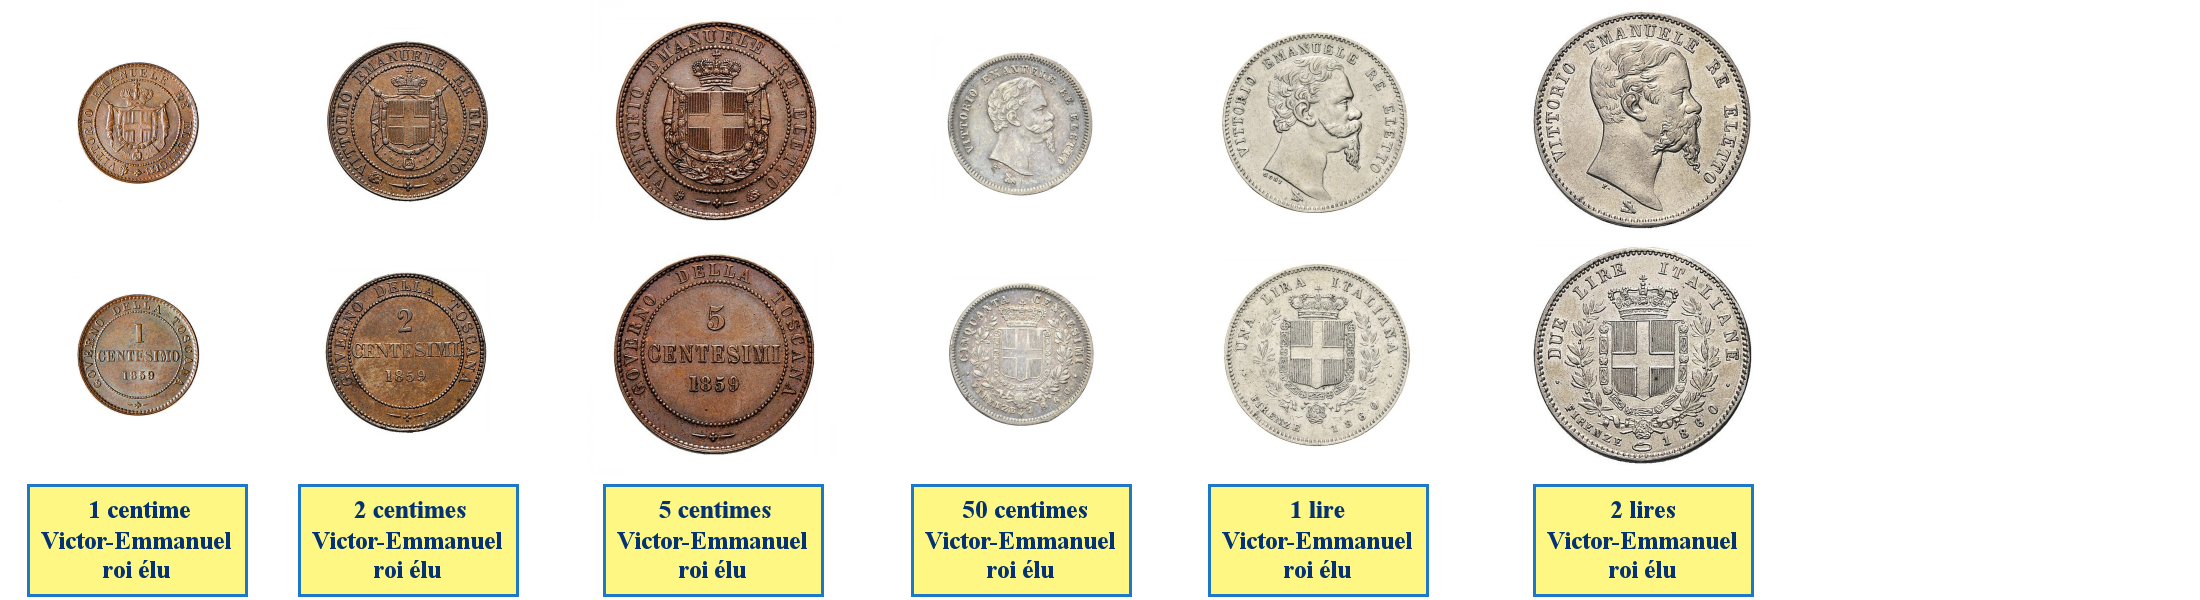 Photos de pièces de monnaies du gouvernement de la Toscane reconnaissant Victor-Emmanuel comme roi élu